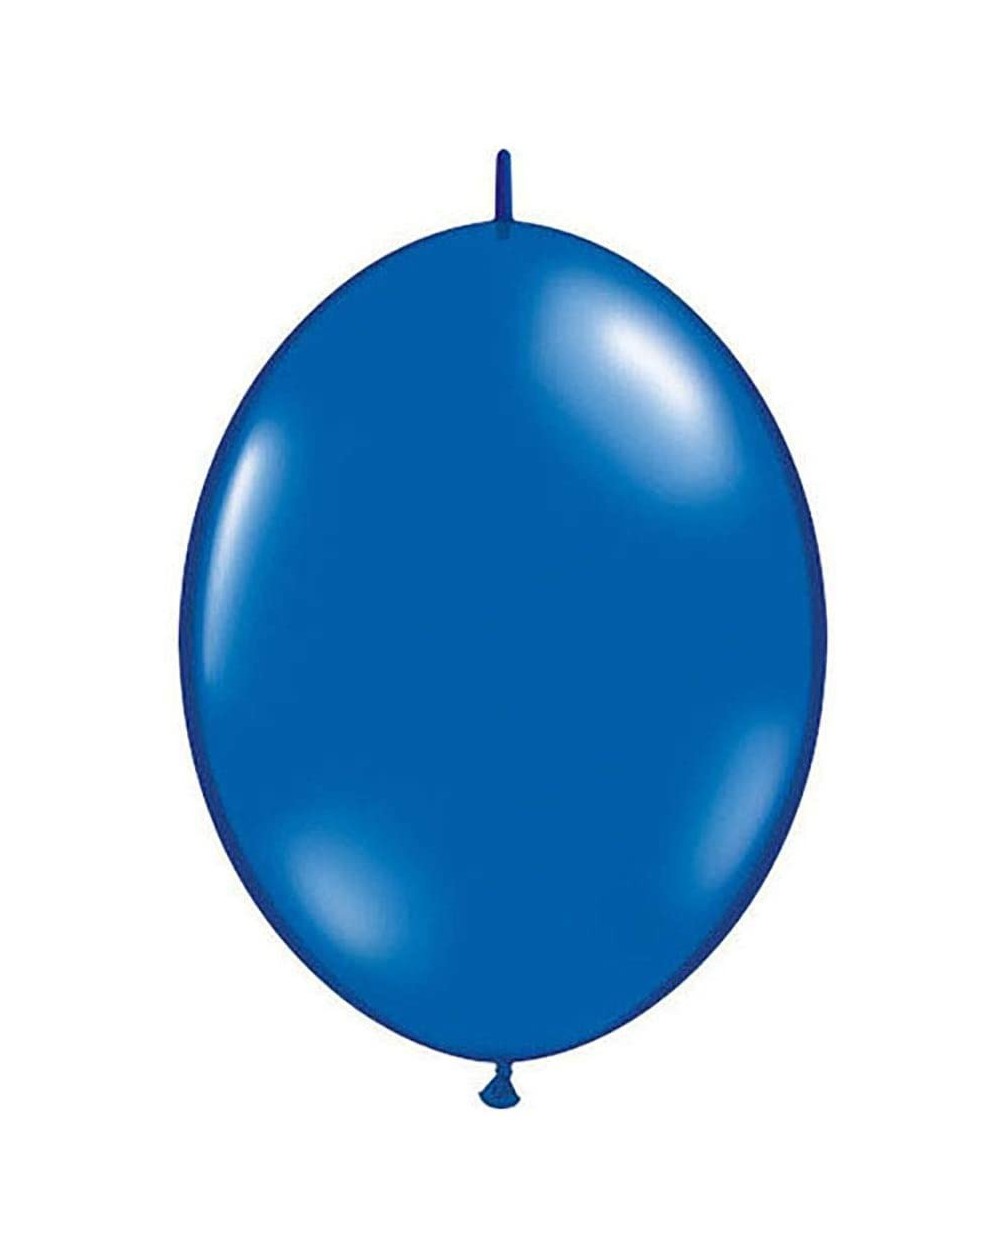 Balloons Pioneer Balloon 65248 QUICKLINK-SAPPHIRE BLUE- 12 - Sapphire Blue - CP11GB5F2OT $19.87